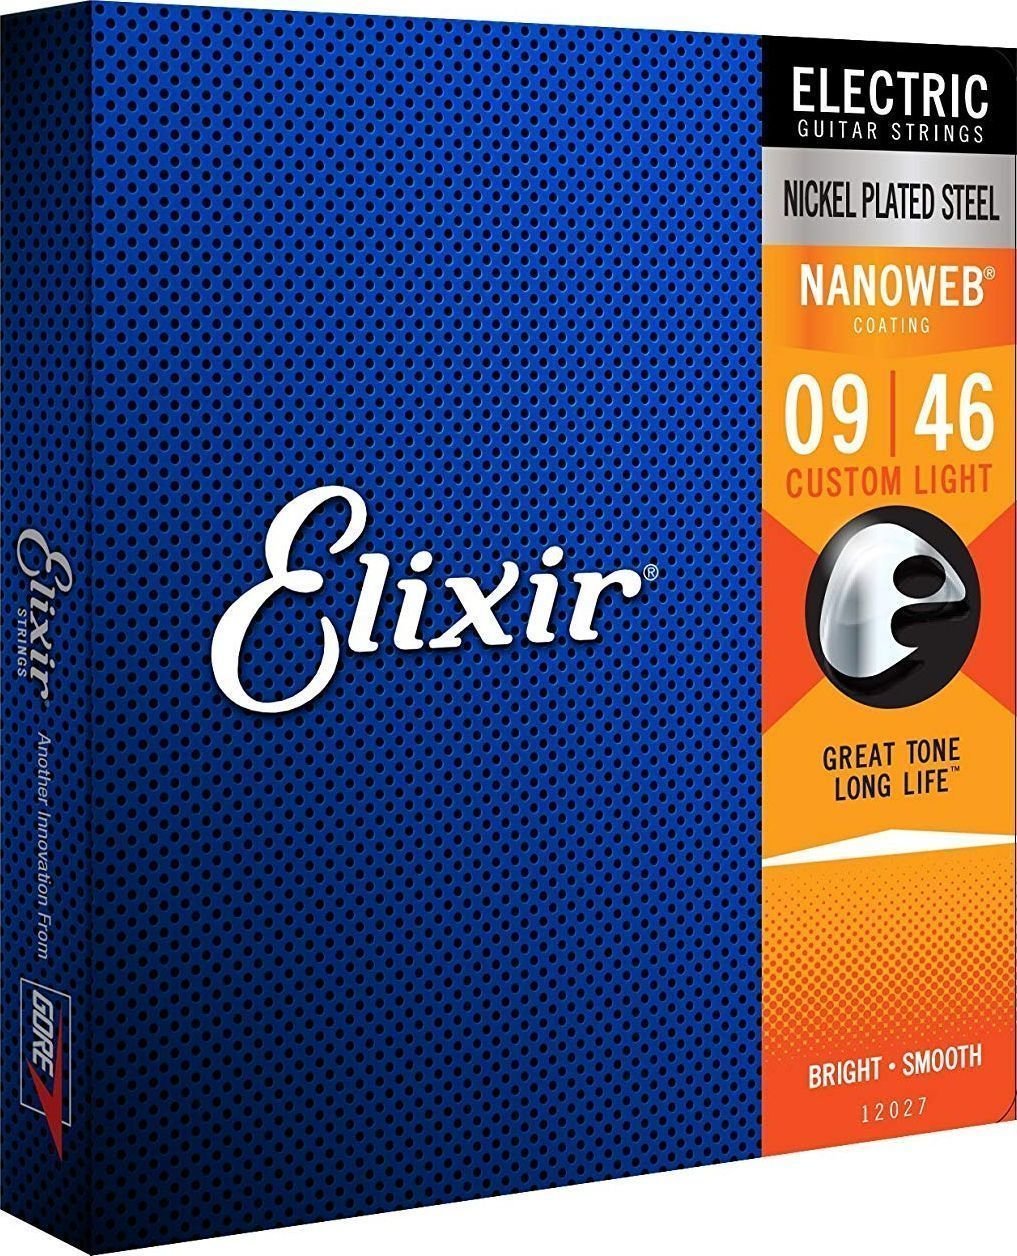 E-guitar strings Elixir 12027 Nanoweb 9-46